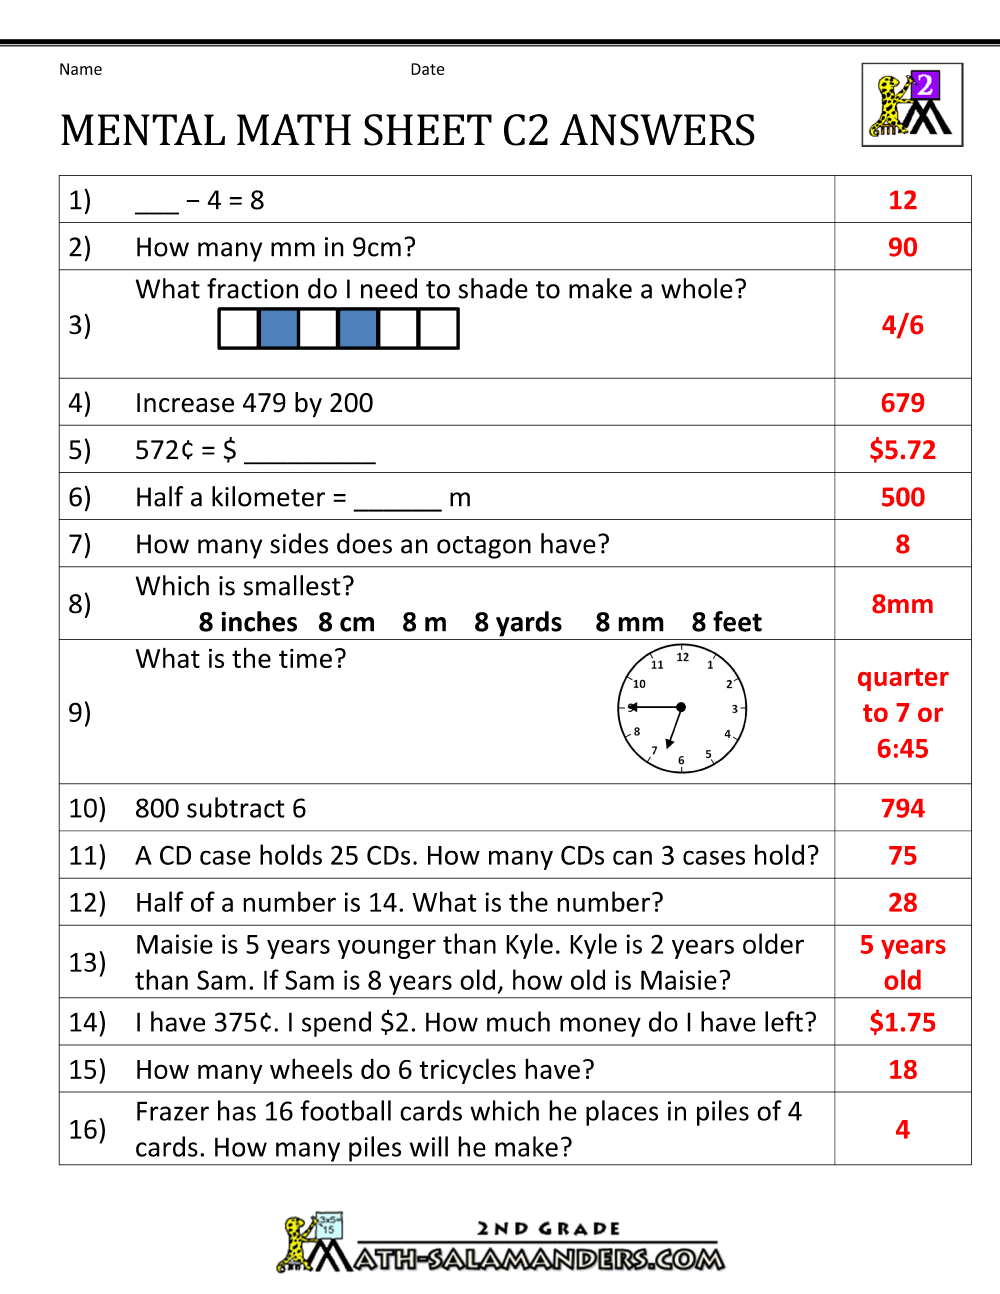 mental-math-worksheet-2nd-grade